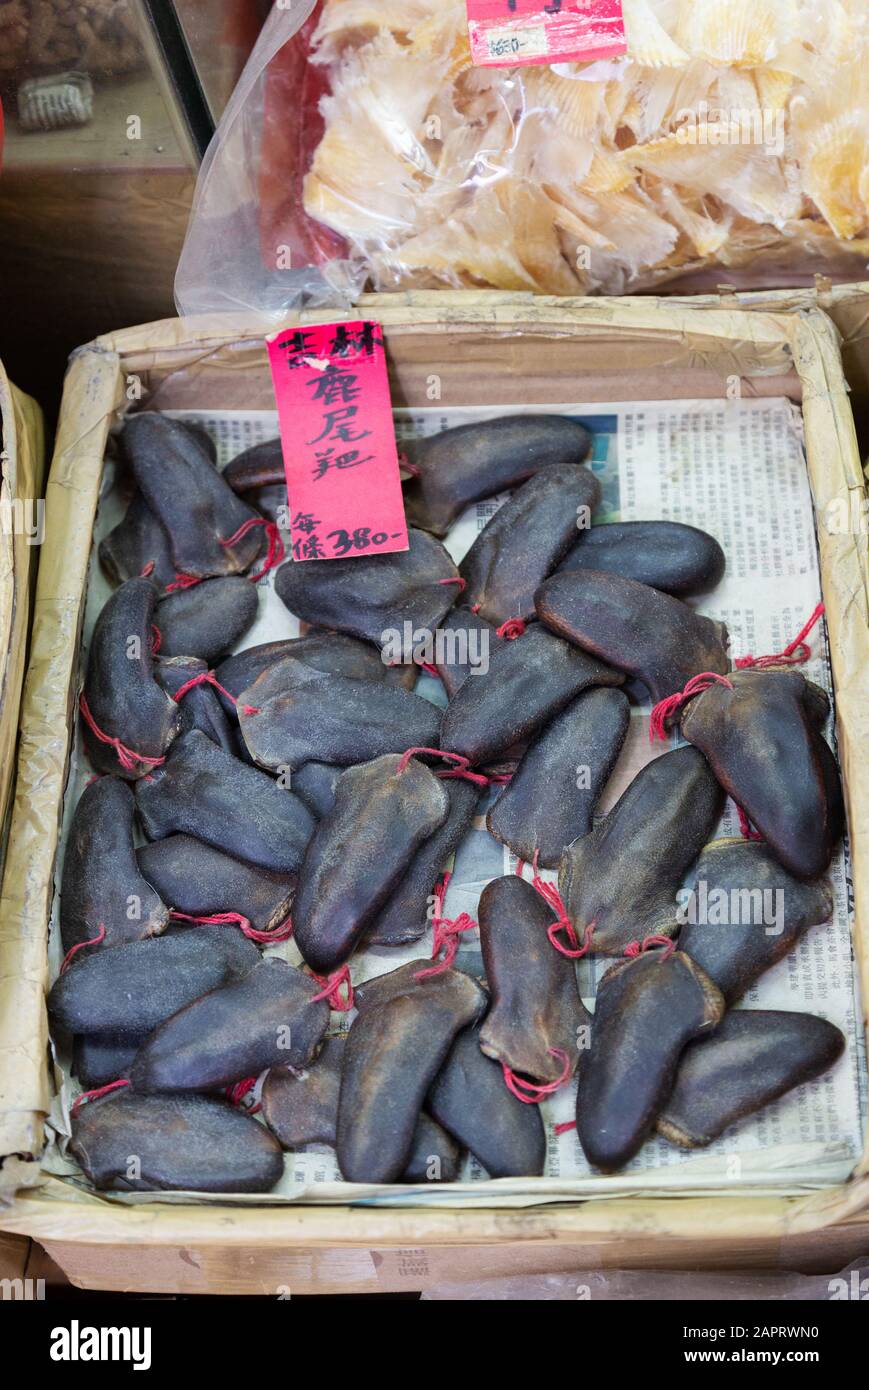 Asia culture - Hong Kong food - uova di squali in vendita in un negozio di pesce, Hong Kong Asia Foto Stock